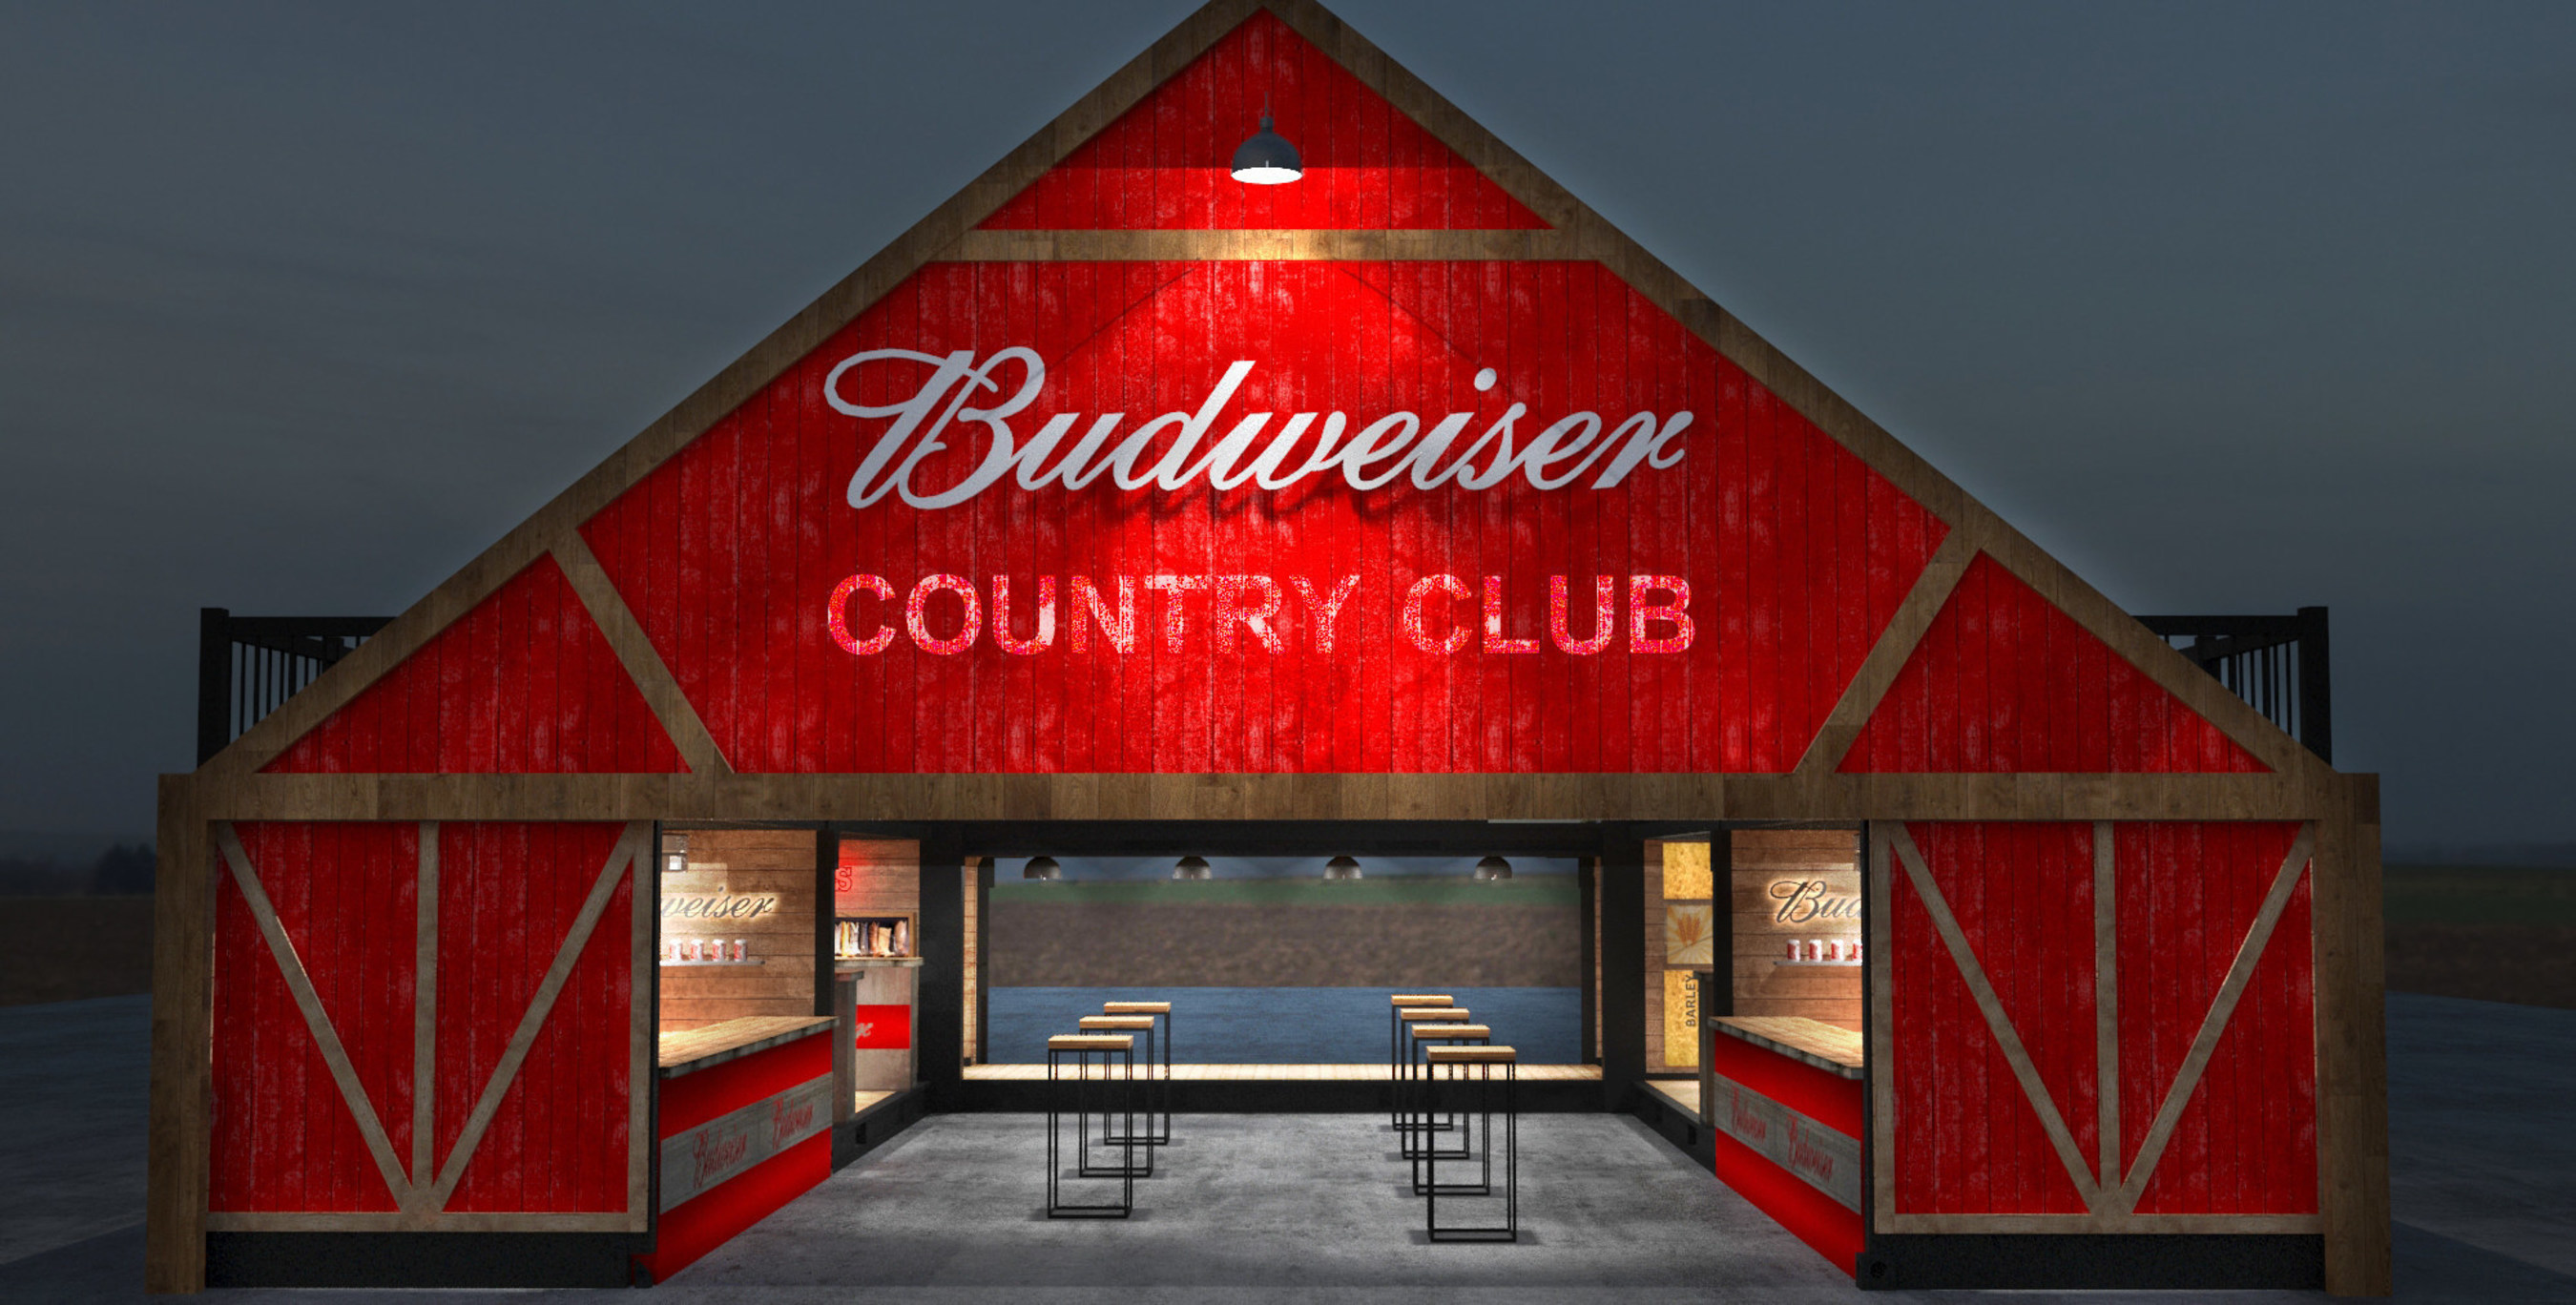 Budweiser Announces Budweiser Country Club